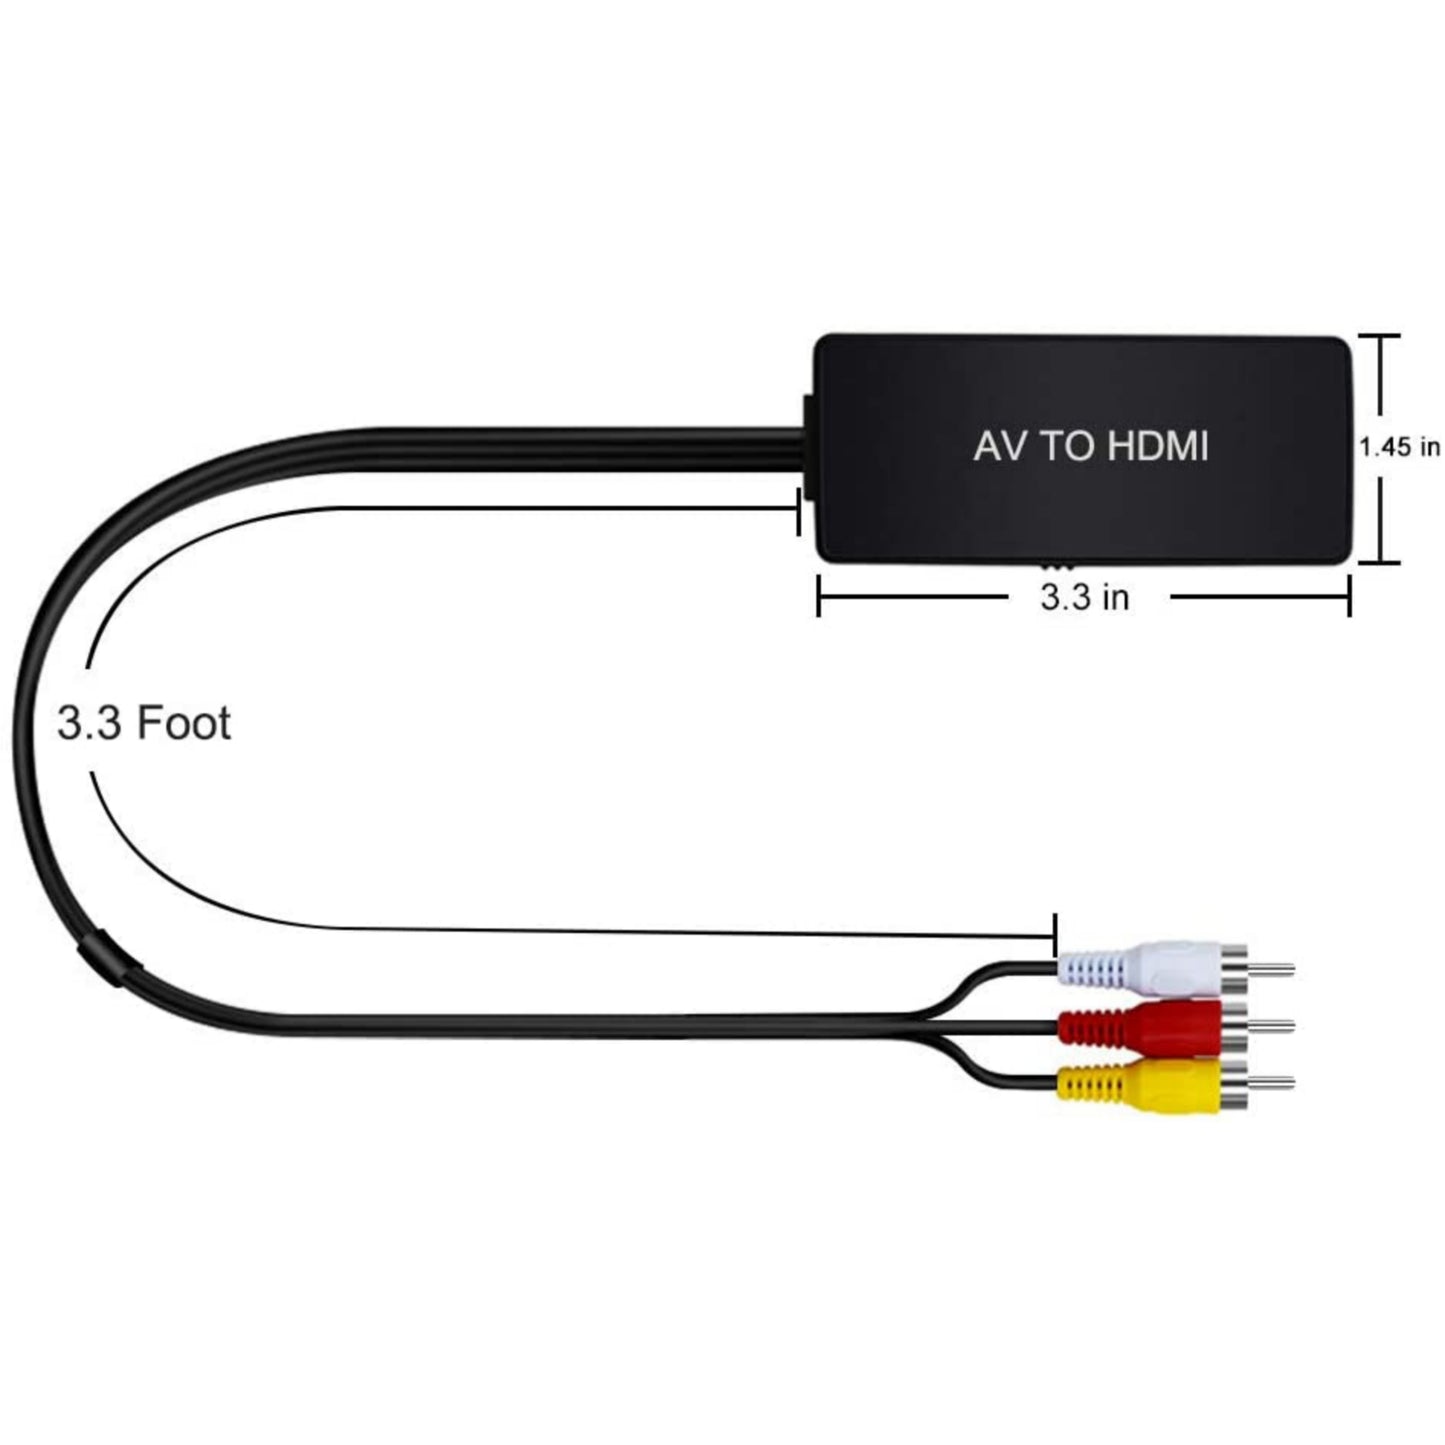 RCA AV To HDMI (AV2HDMI) Adapter Converter